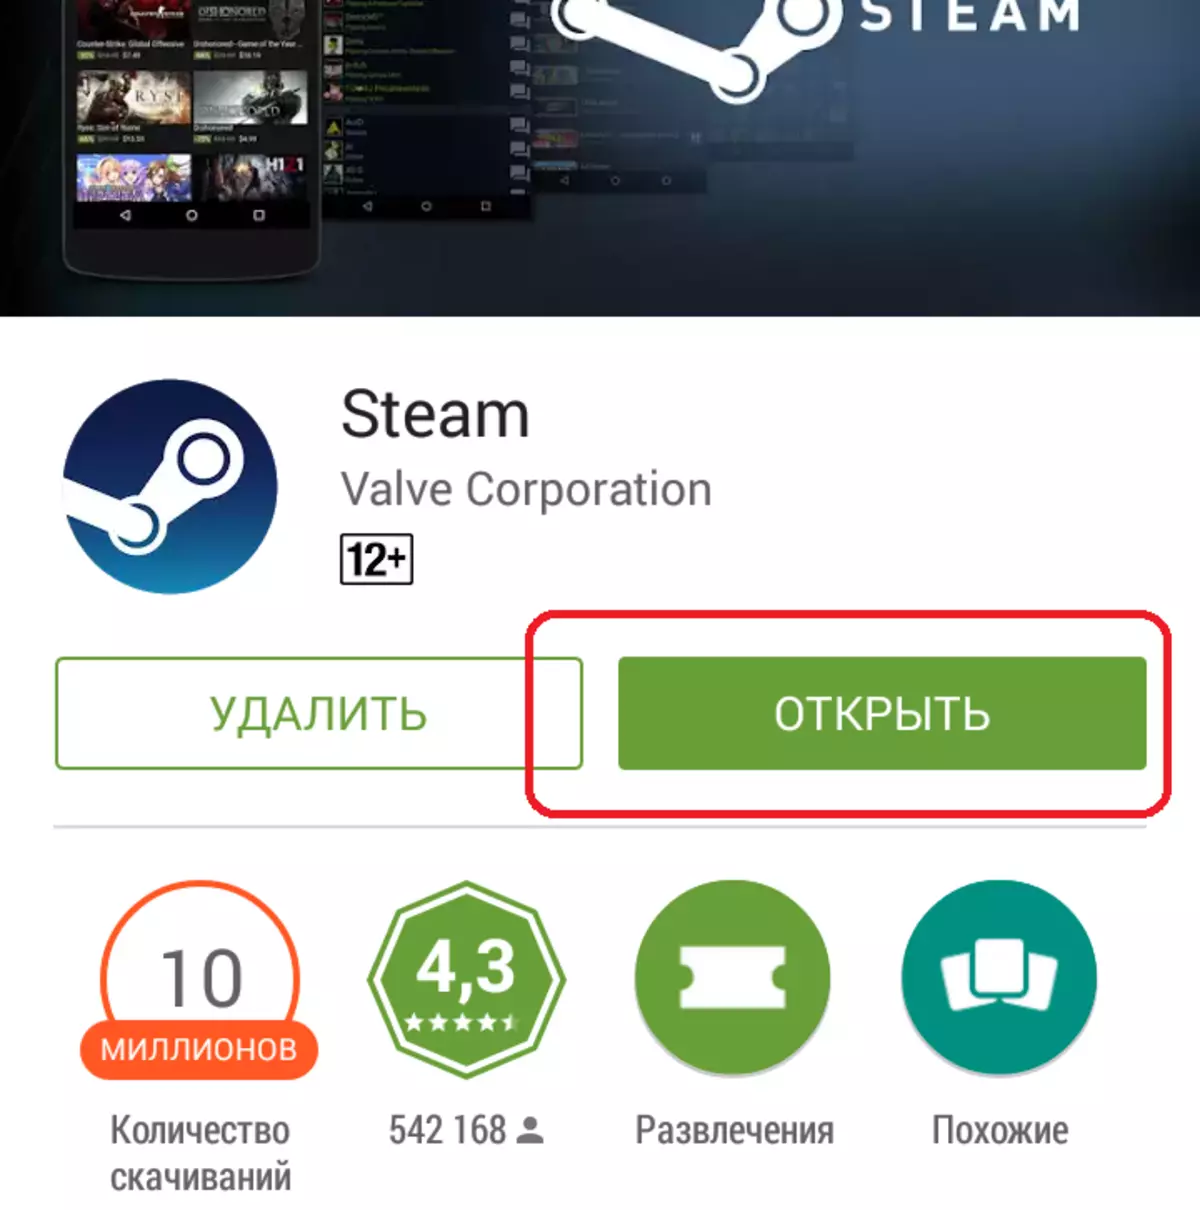 Kufakiwe Steam on Mobile Ucingo